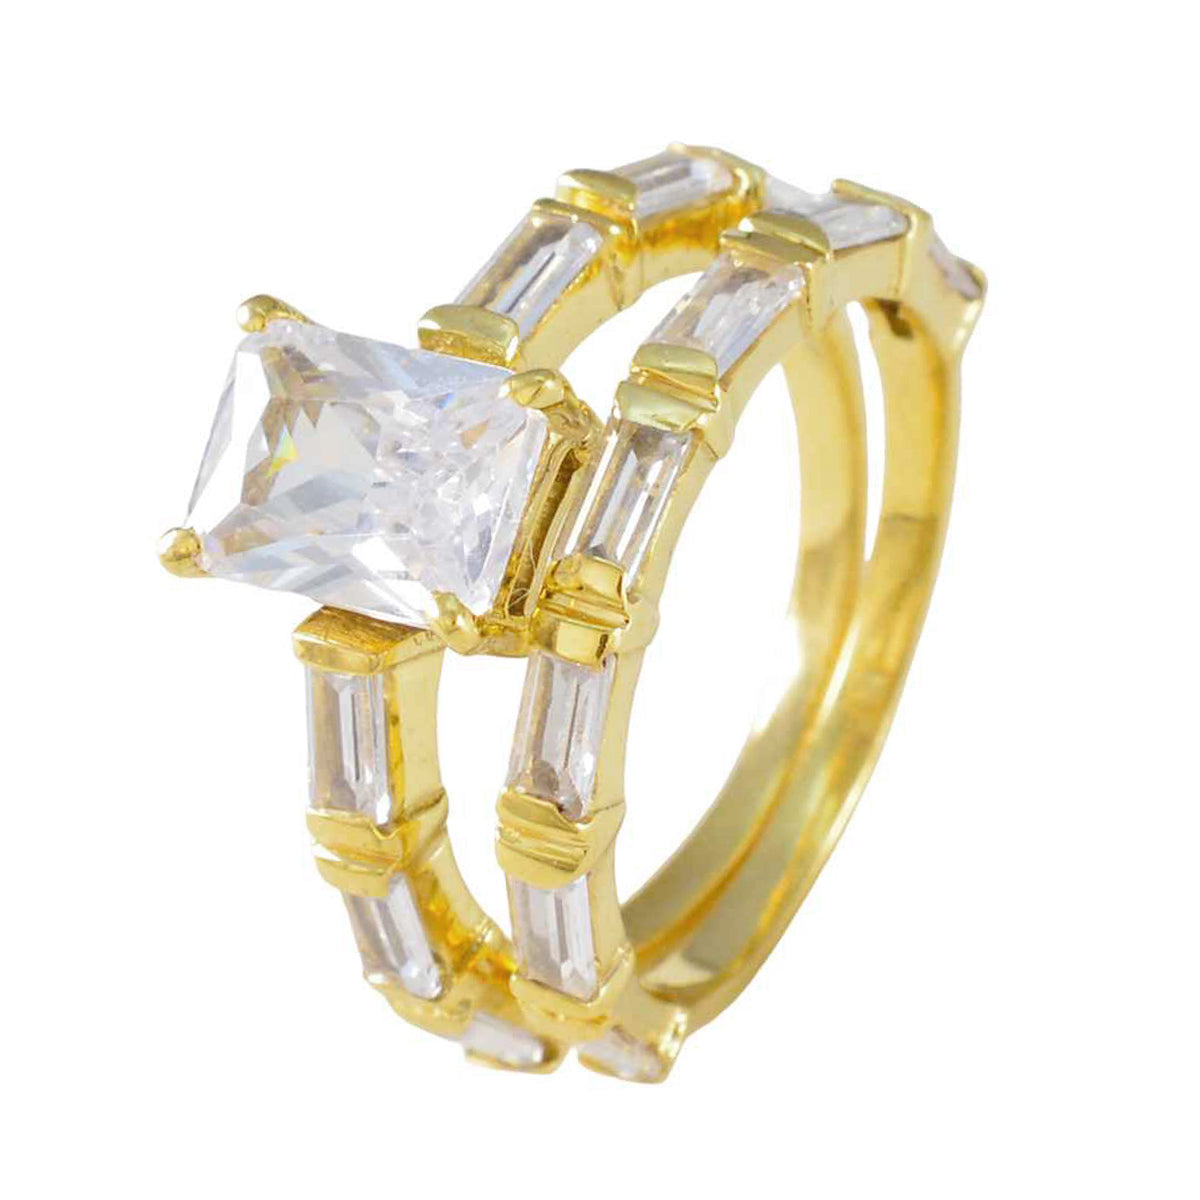 Крупномасштабное серебряное кольцо riyo с покрытием из желтого золота, кольцо с зубцом восьмиугольной формы из белого камня cz